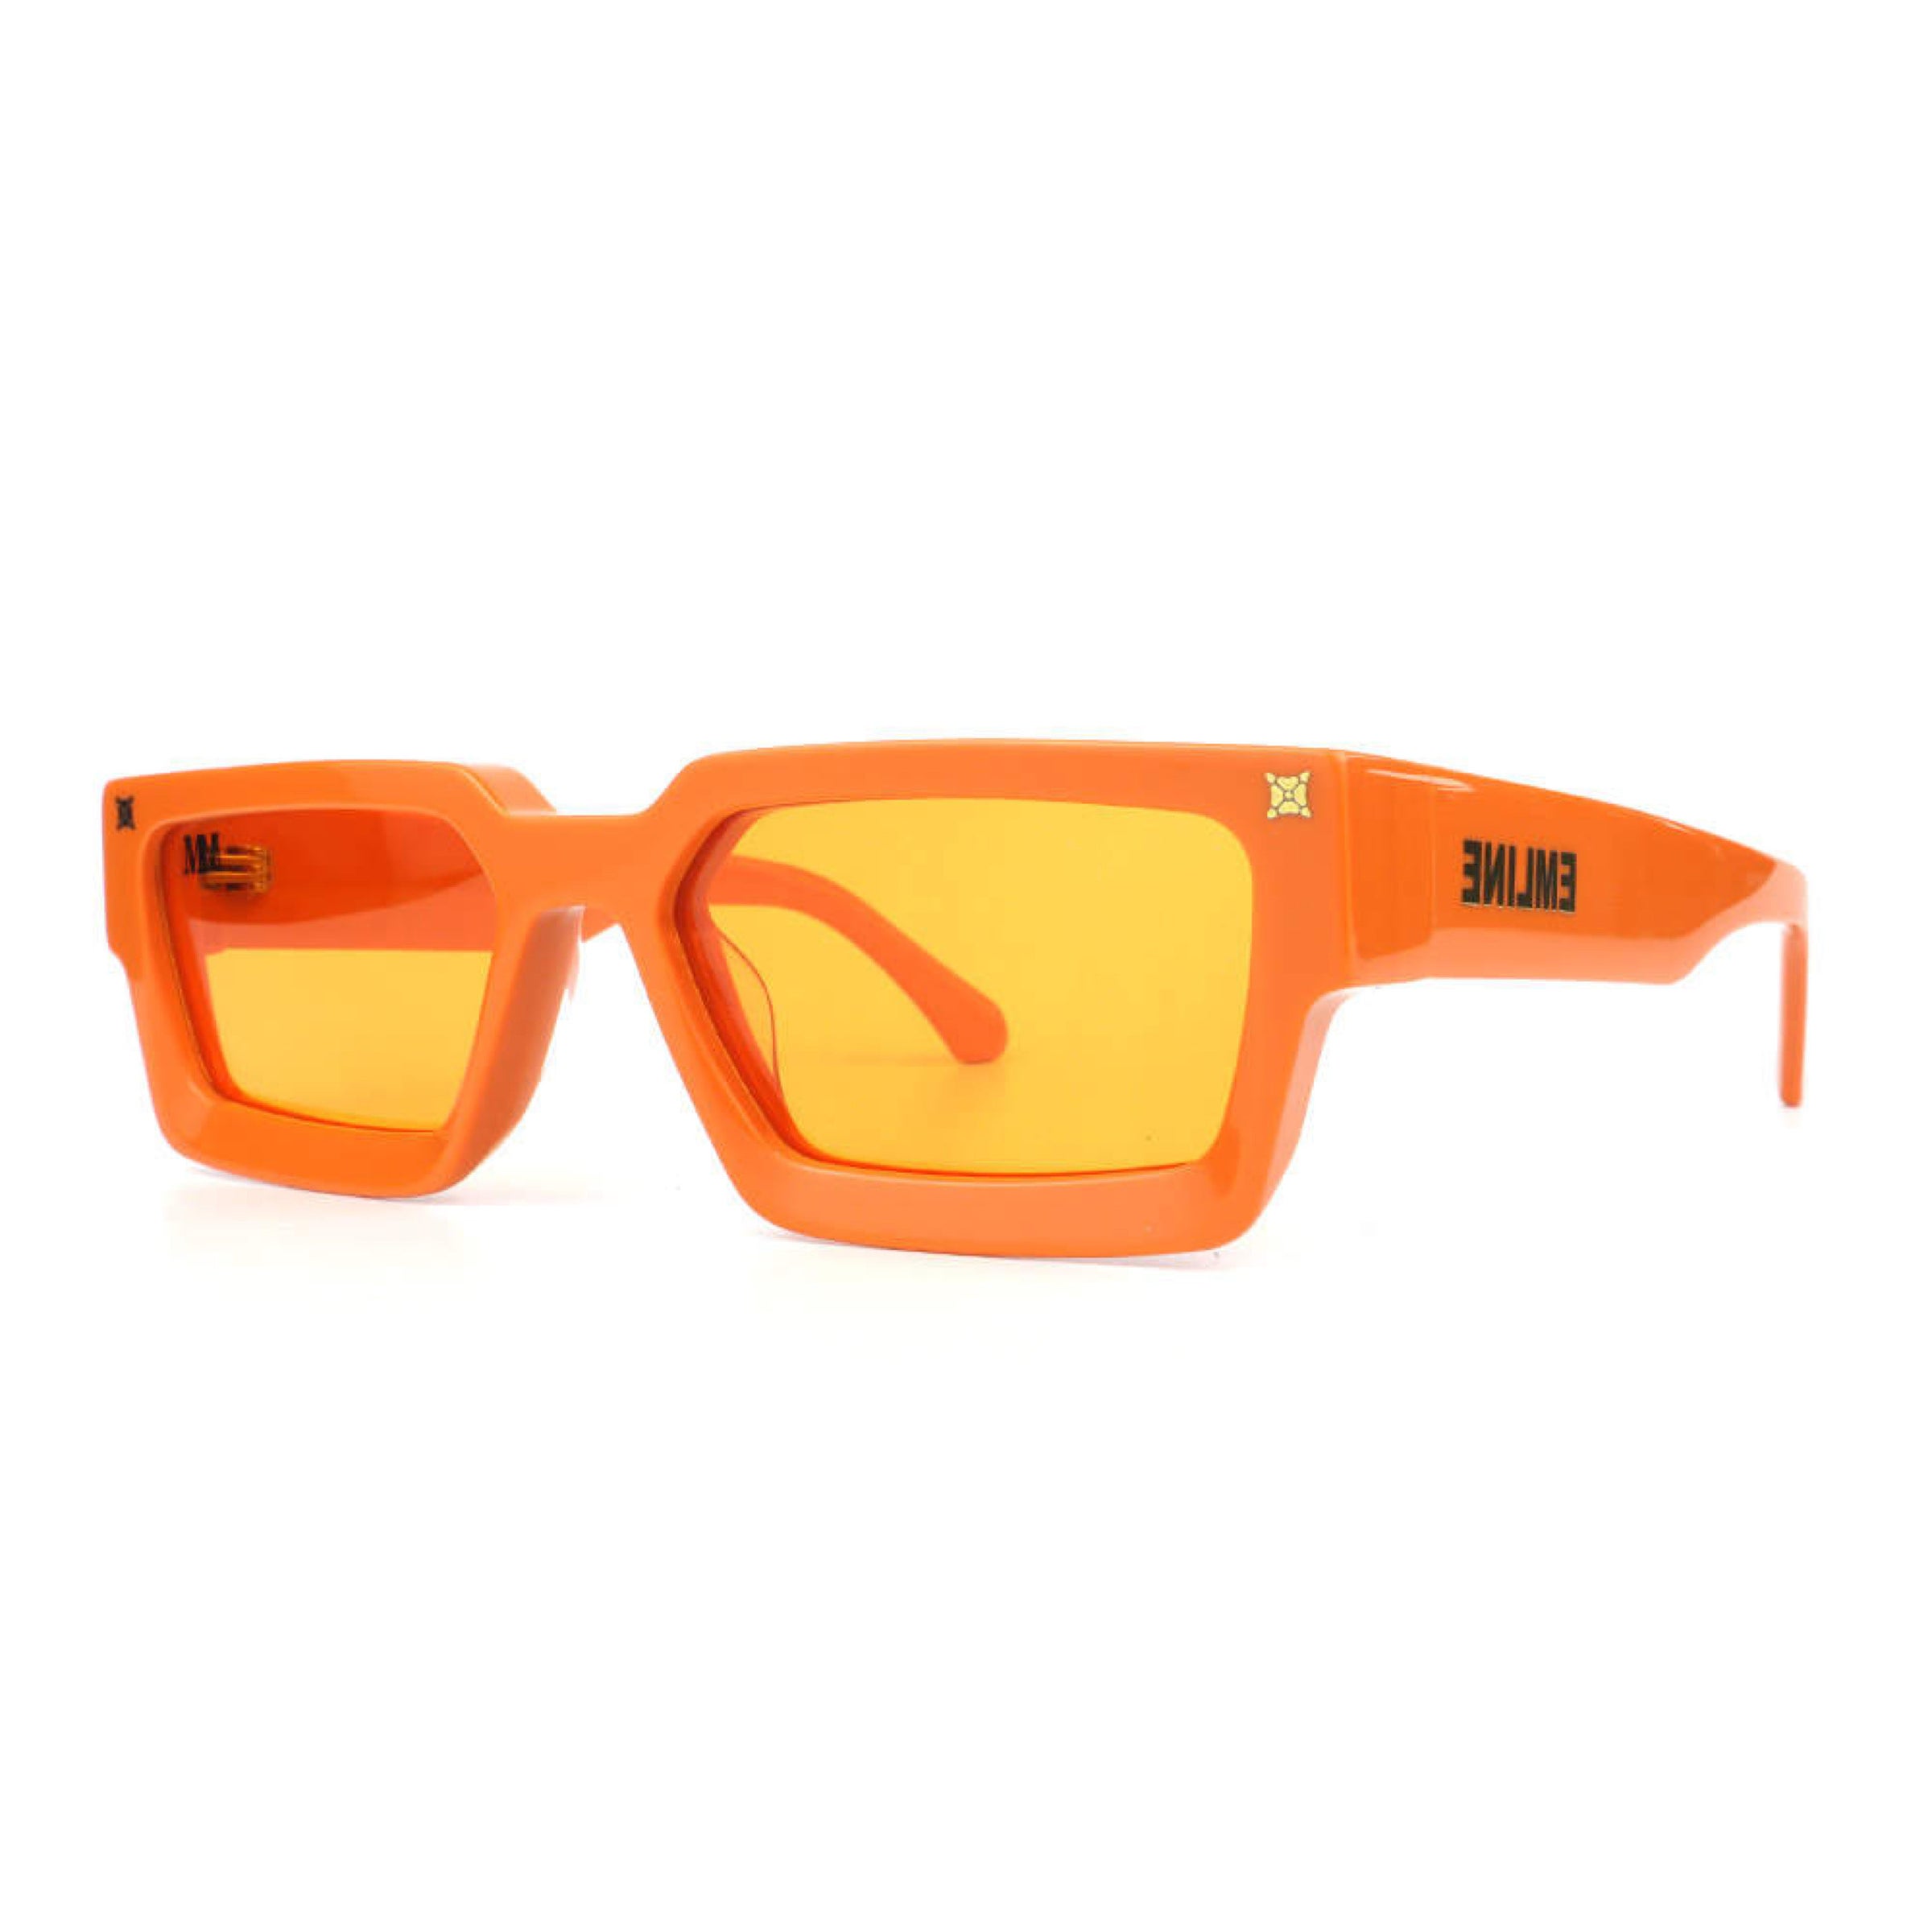 Emline Sunglasses- Orange